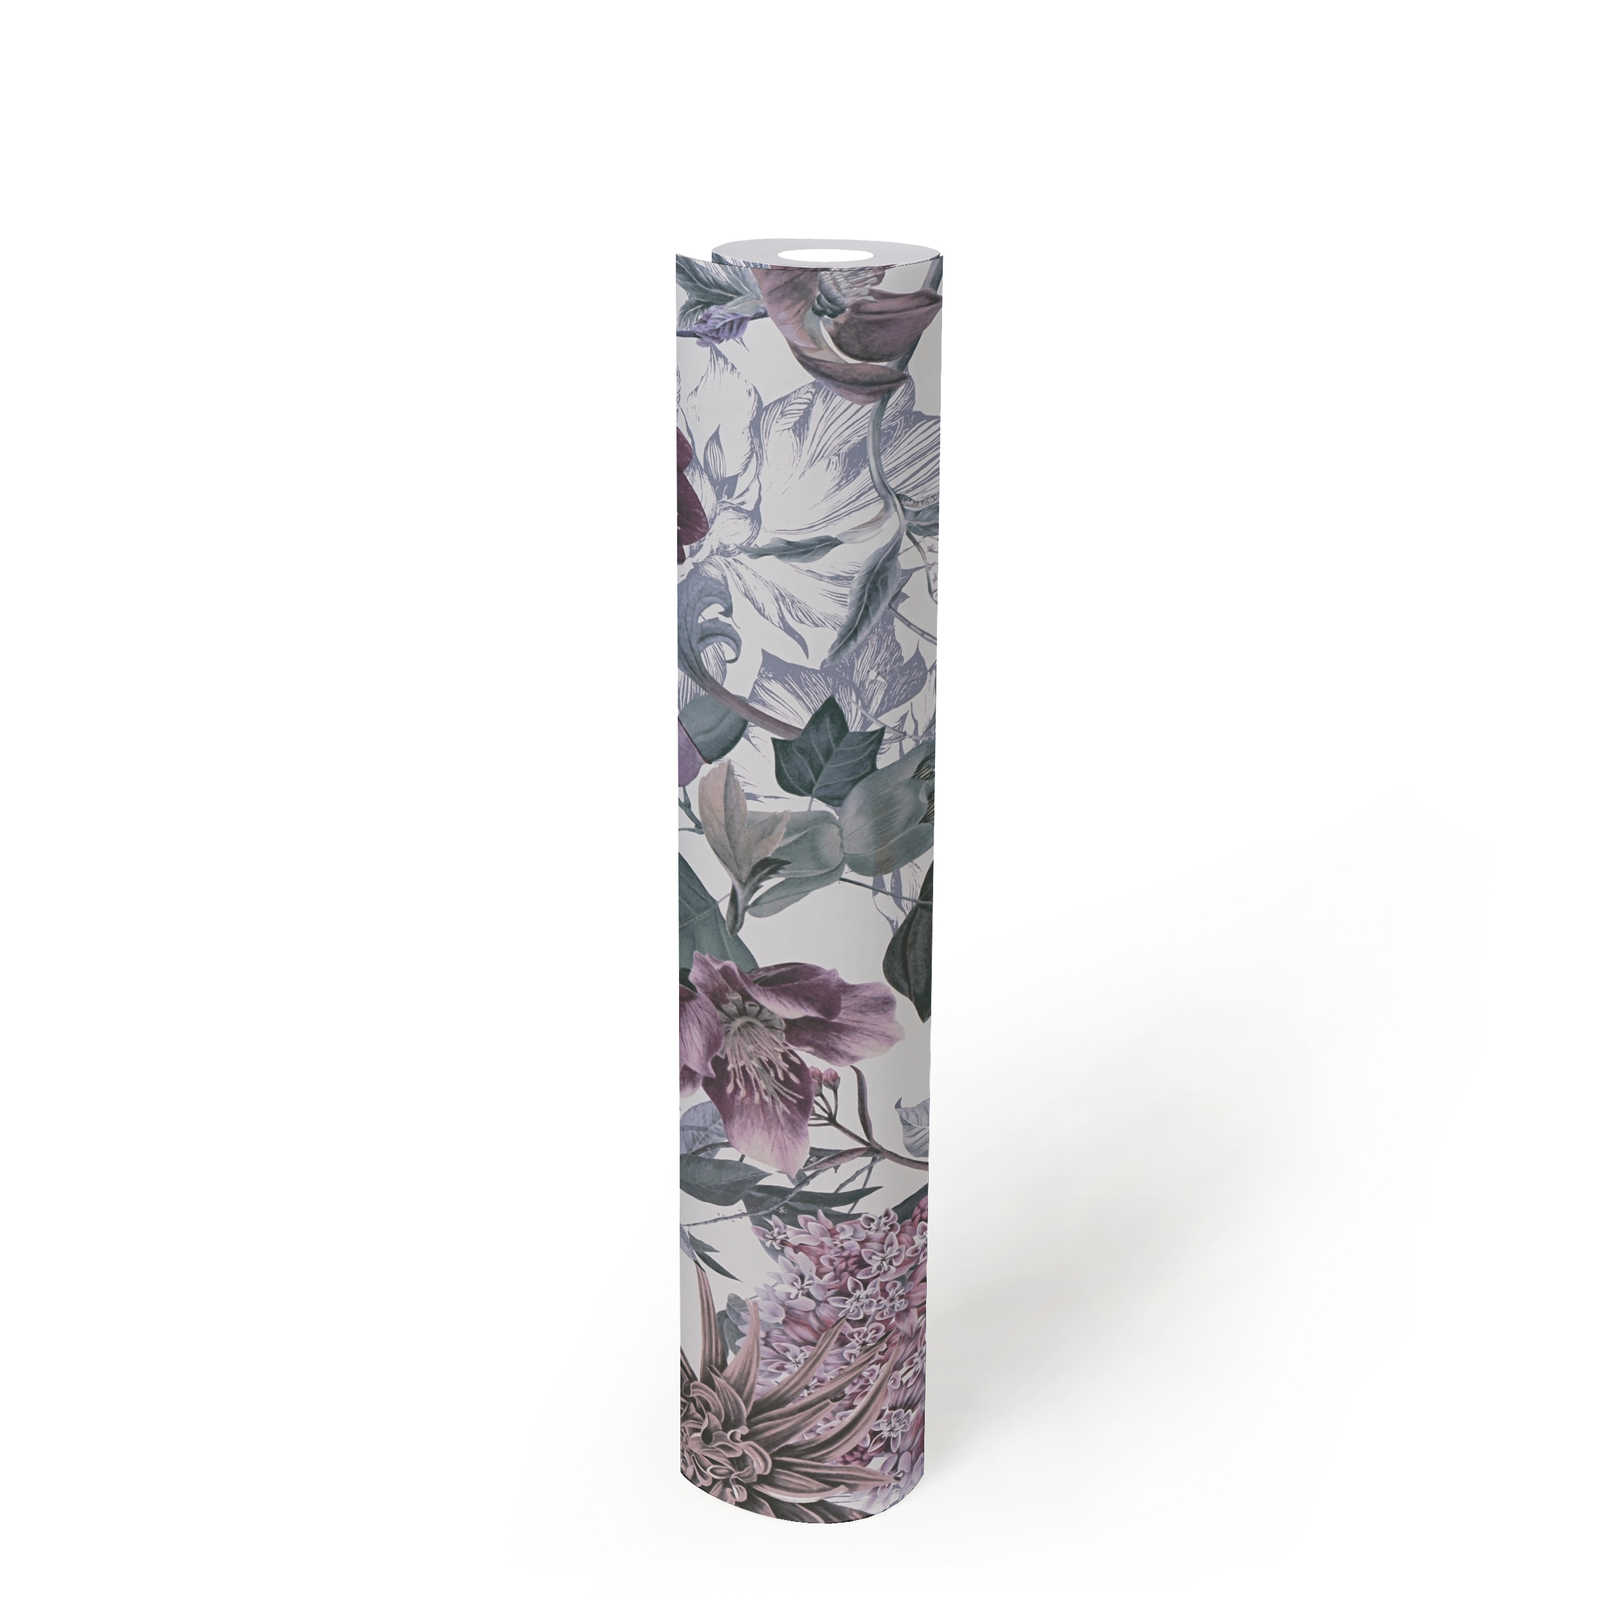             Florale Tapete Blumen Design mit Blättern – Rosa, Grau
        